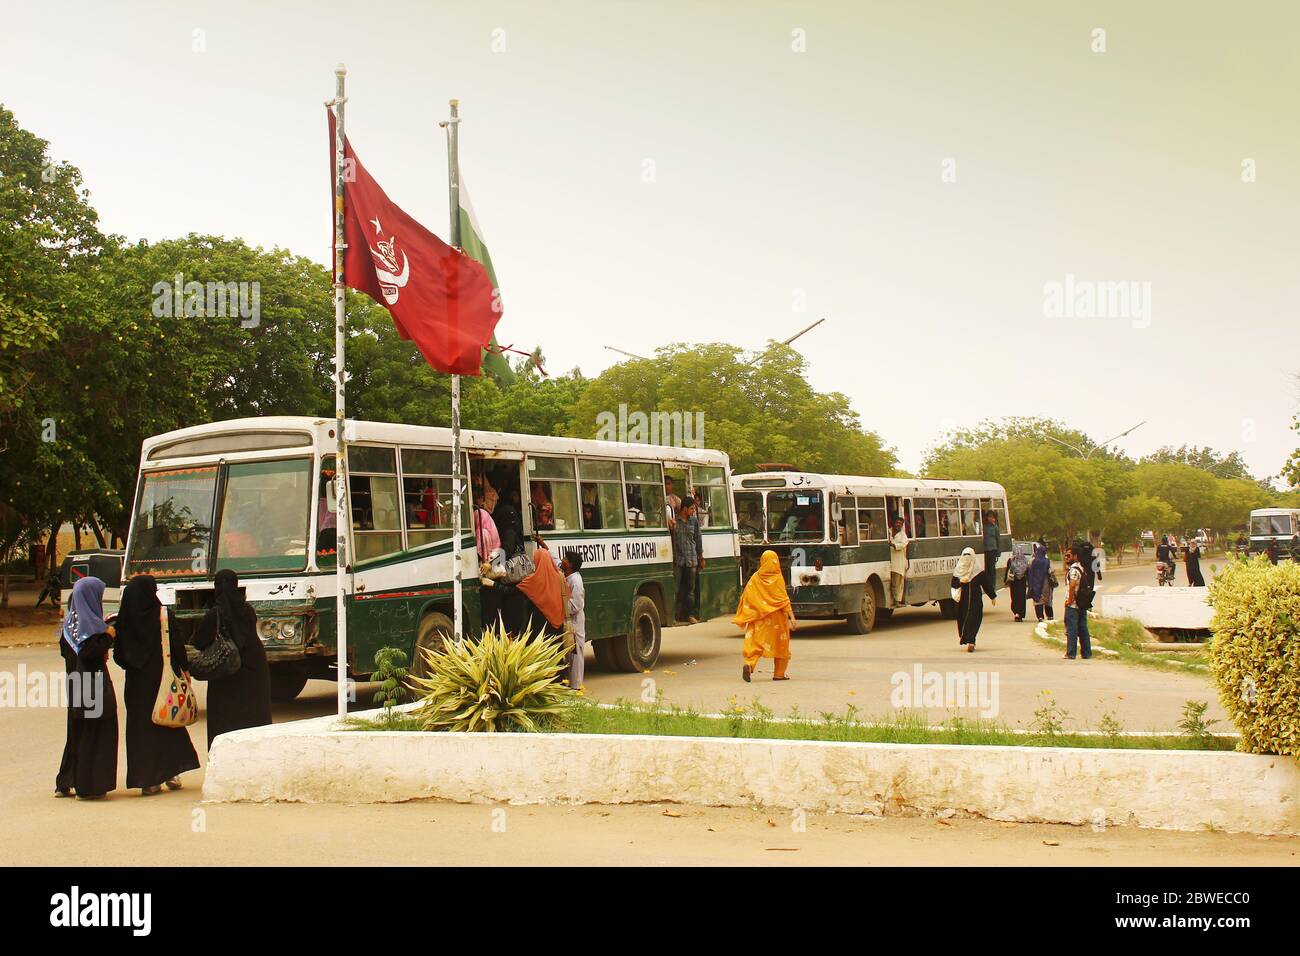 Université de Karachi - étudiants voyageant dans l'autobus universitaire à l'intérieur du Campus 25/09/2012 Banque D'Images